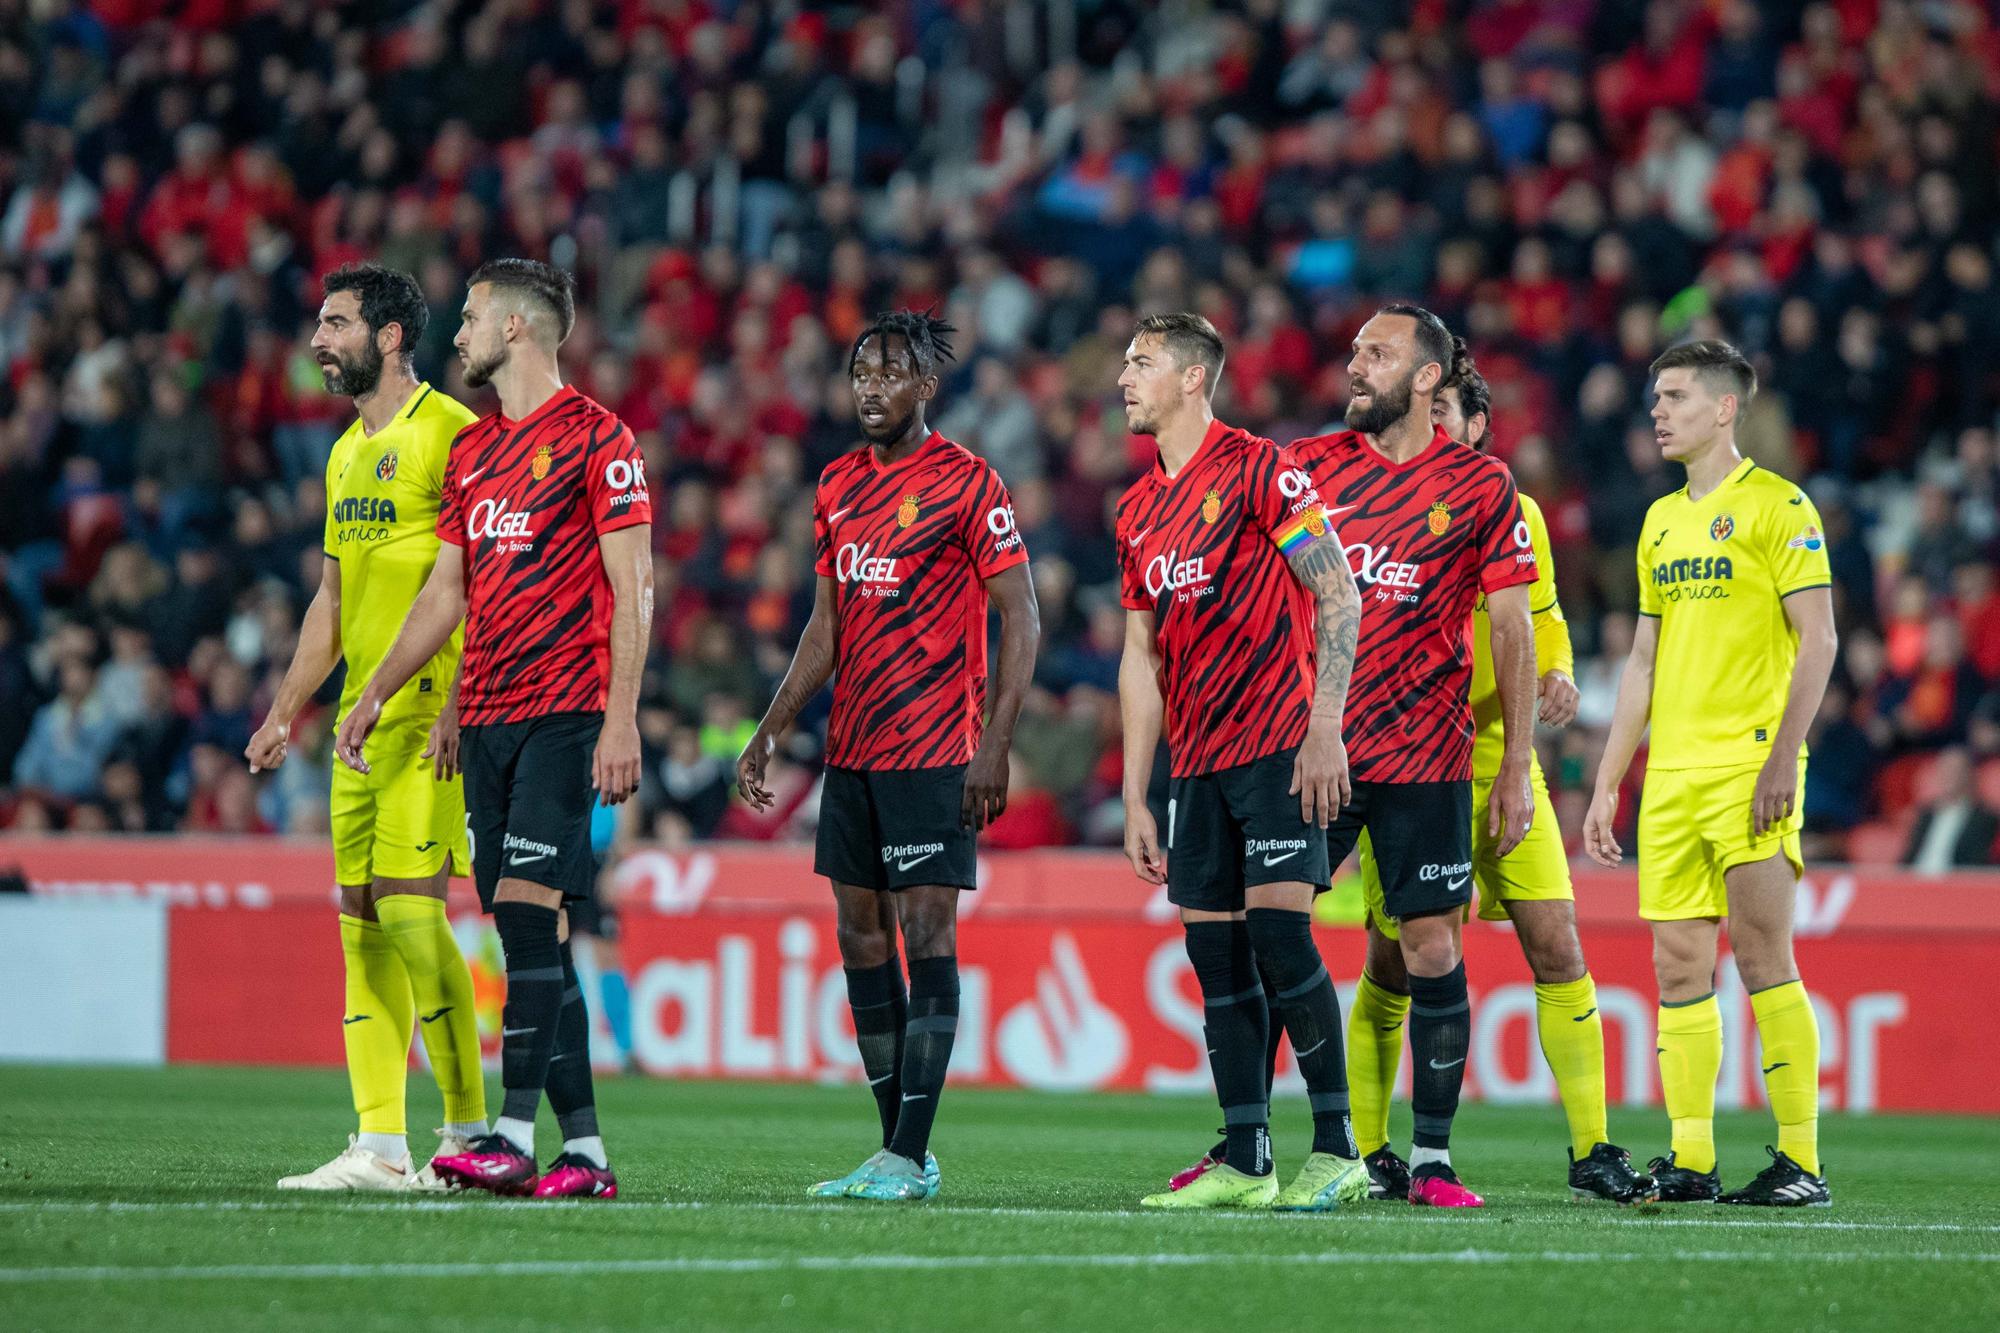 RCD Mallorca - Villarreal: las mejores imágenes del partido